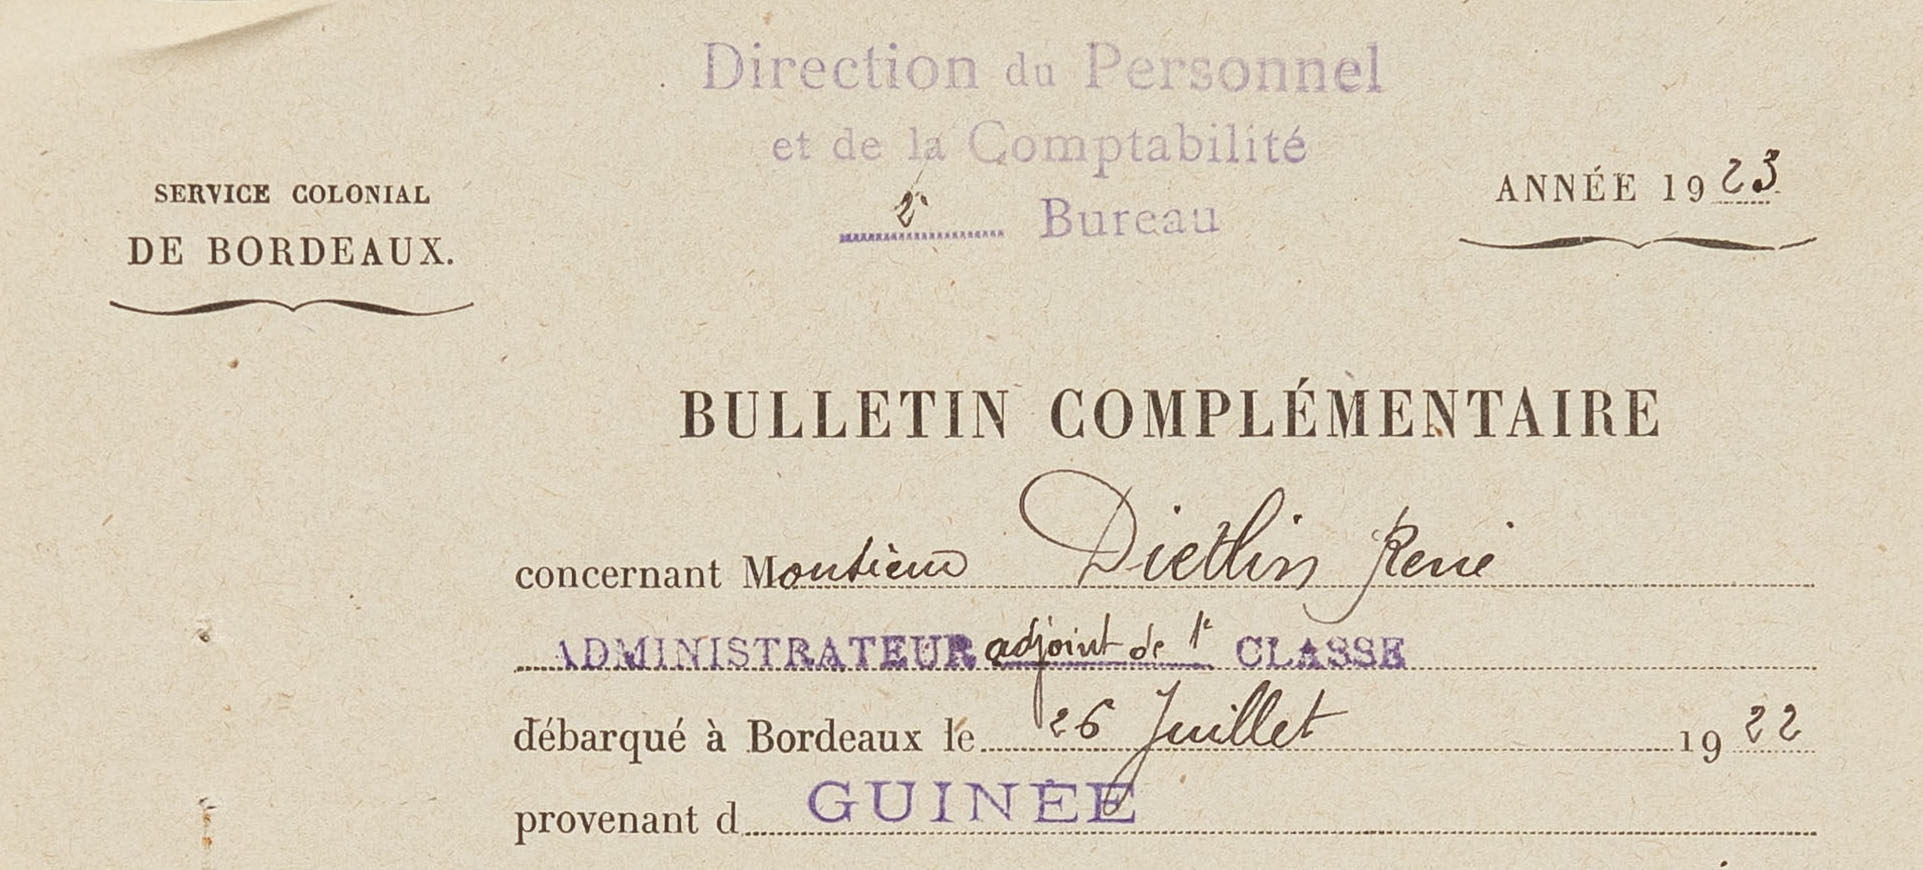 Exemples de notice et bulletins conservés dans le dossier personnel de DIETLIN René, administrateur adjoint des colonies